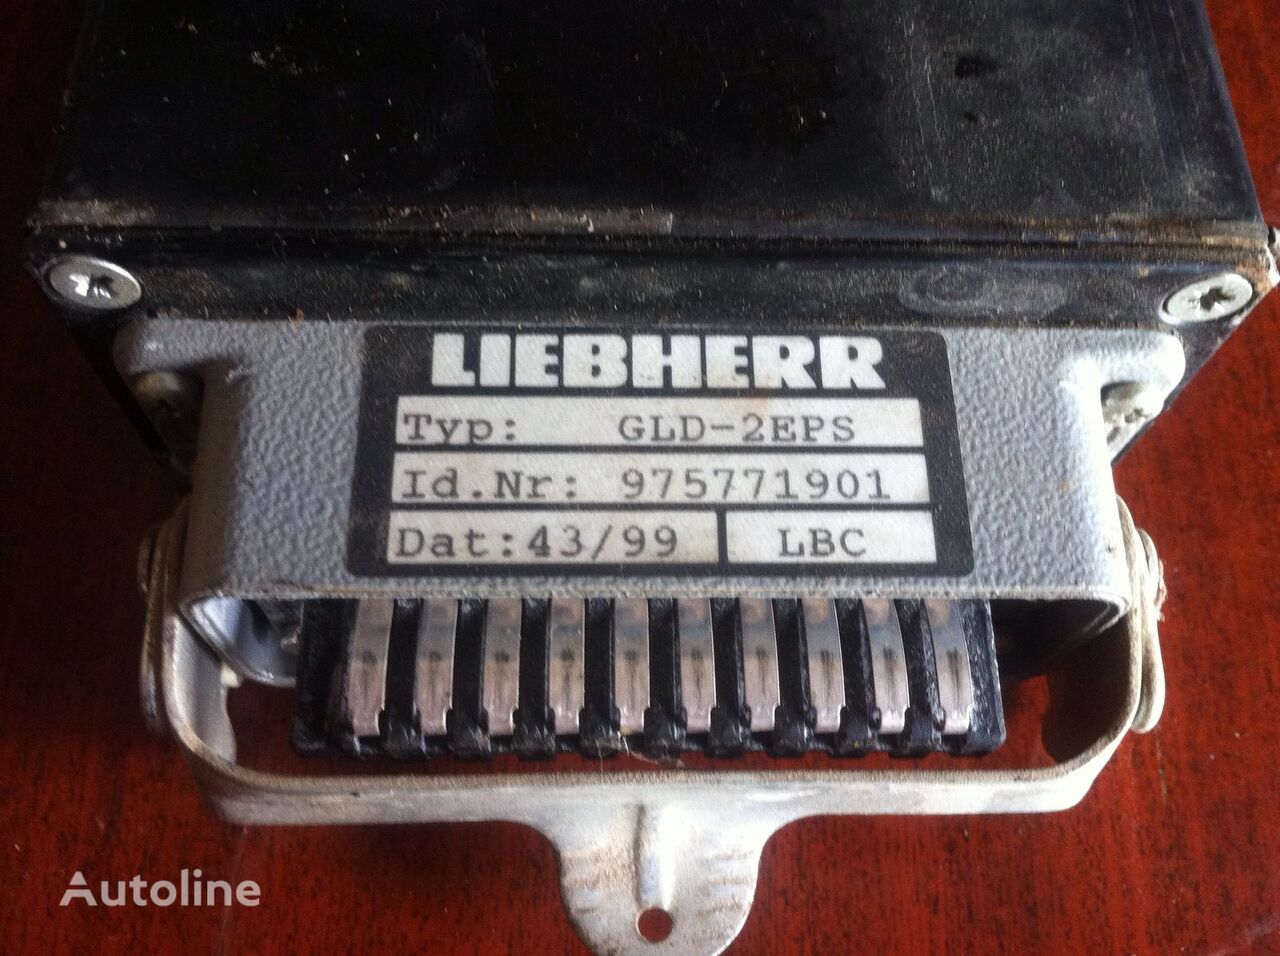 бортовой компьютер Liebherr GLD-2EPS 902 LITRONIK для экскаватора Liebherr 902 LITRONIK 904